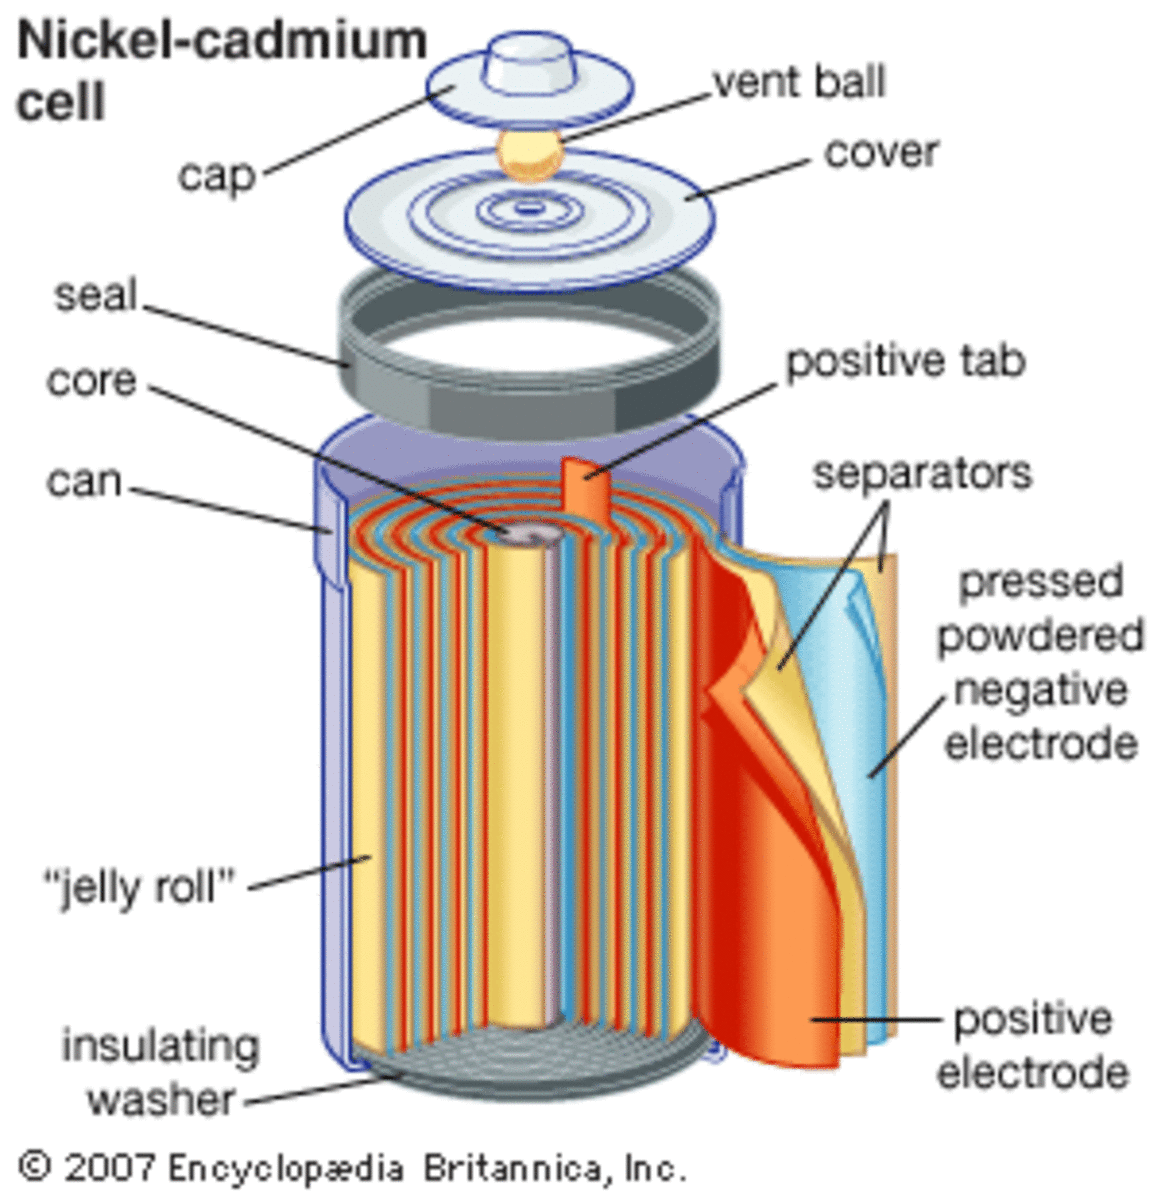 The Nickel Cadmium Battery | TurboFuture